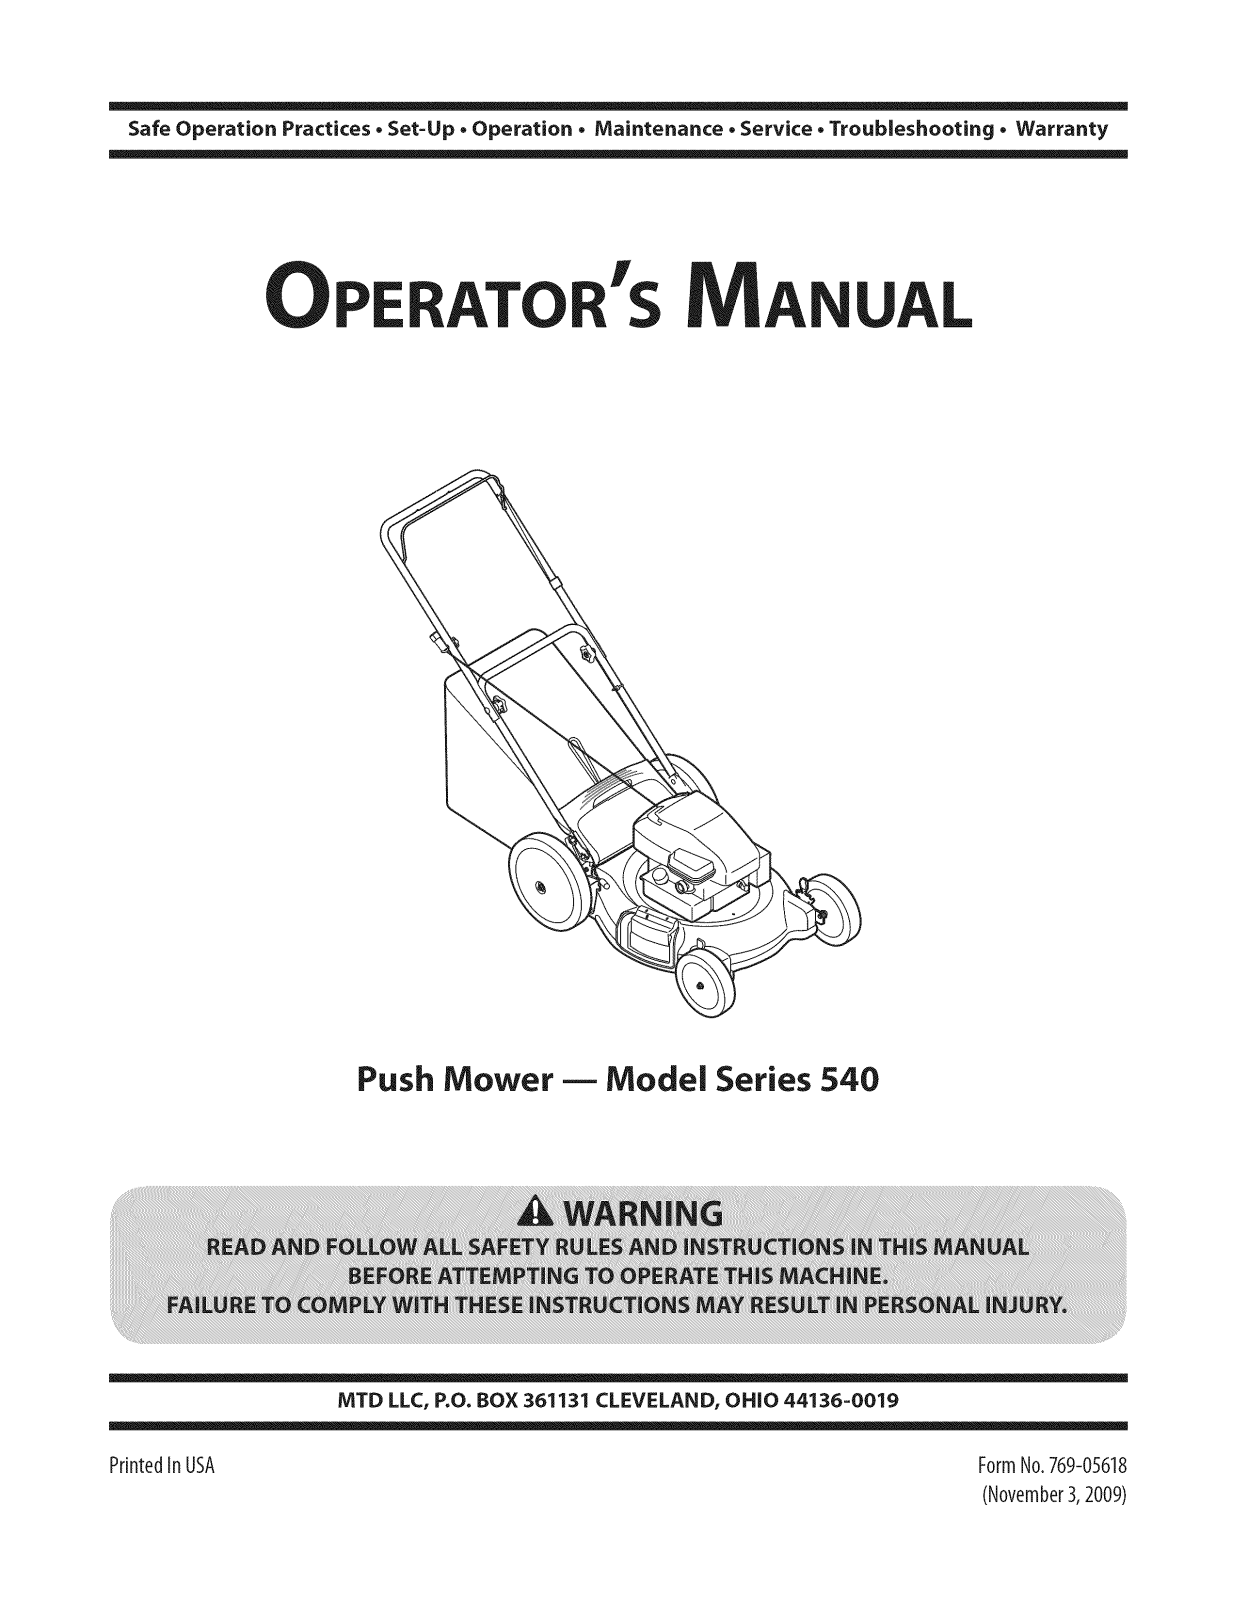 MTD 11A-549Q001, 11A-544F004, 11A-544A059, 11A-542Q724 Owner’s Manual